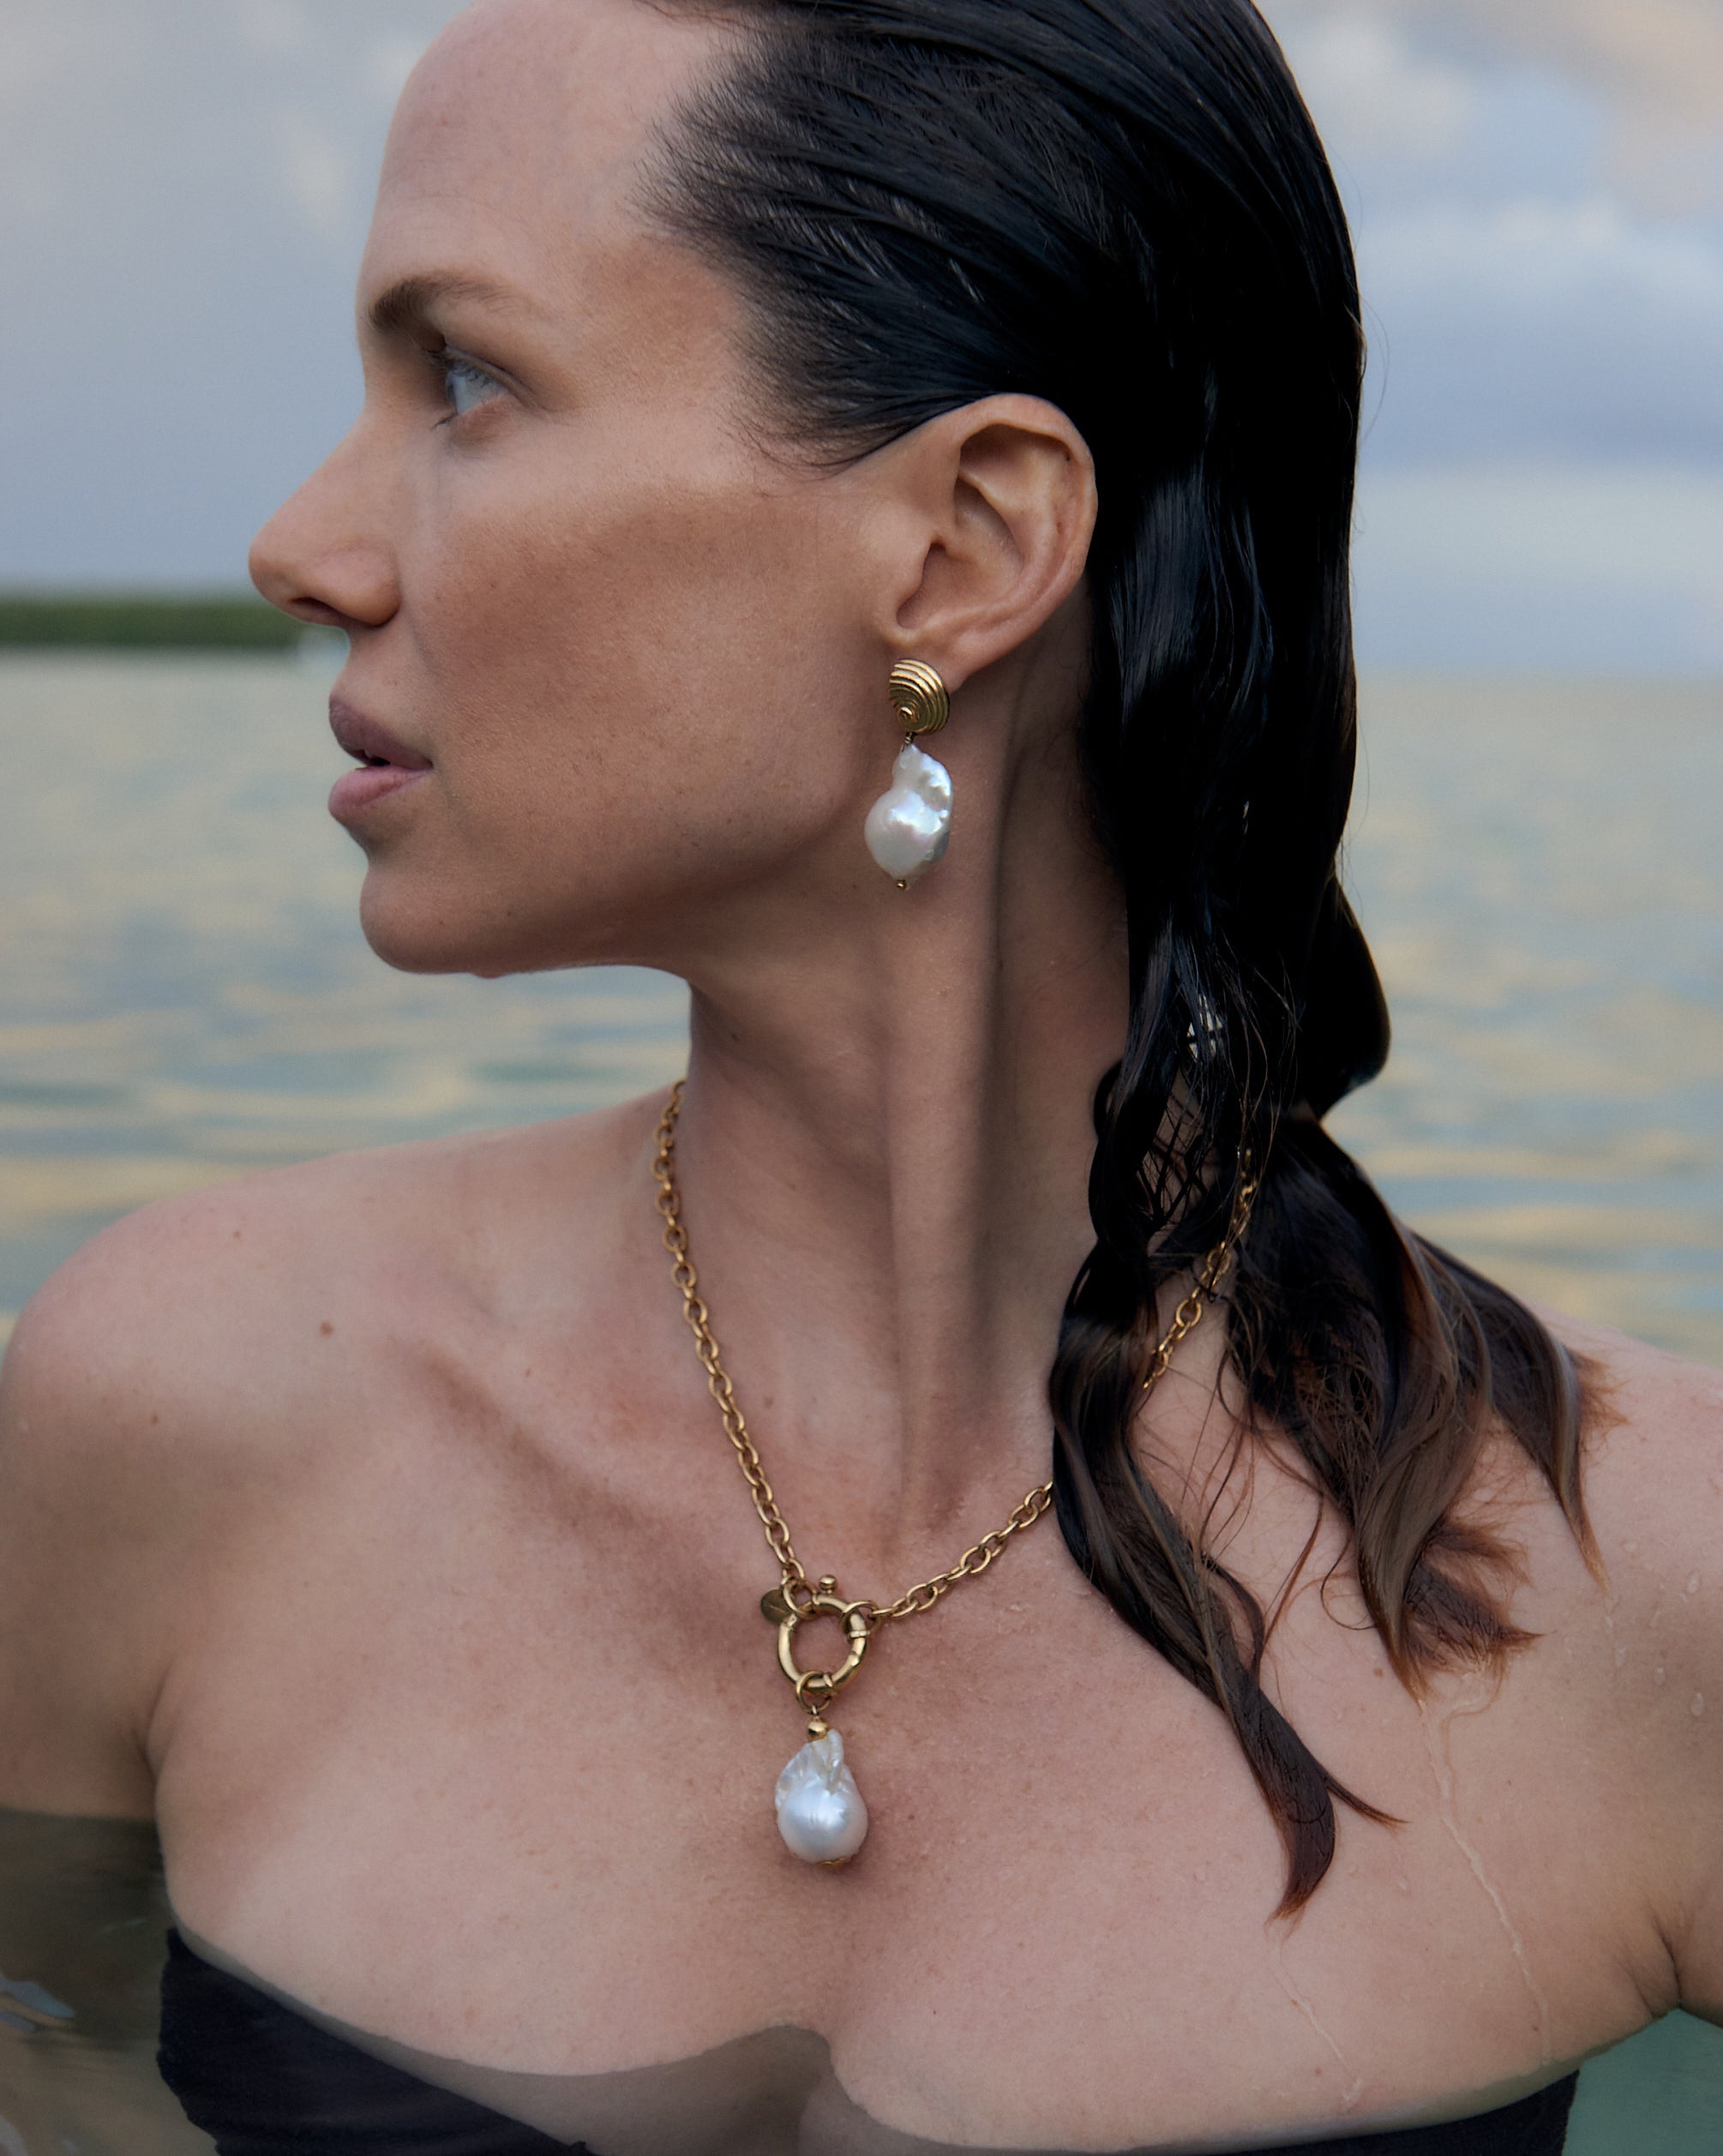 St Géran Rose Gold - Oceano Pearls